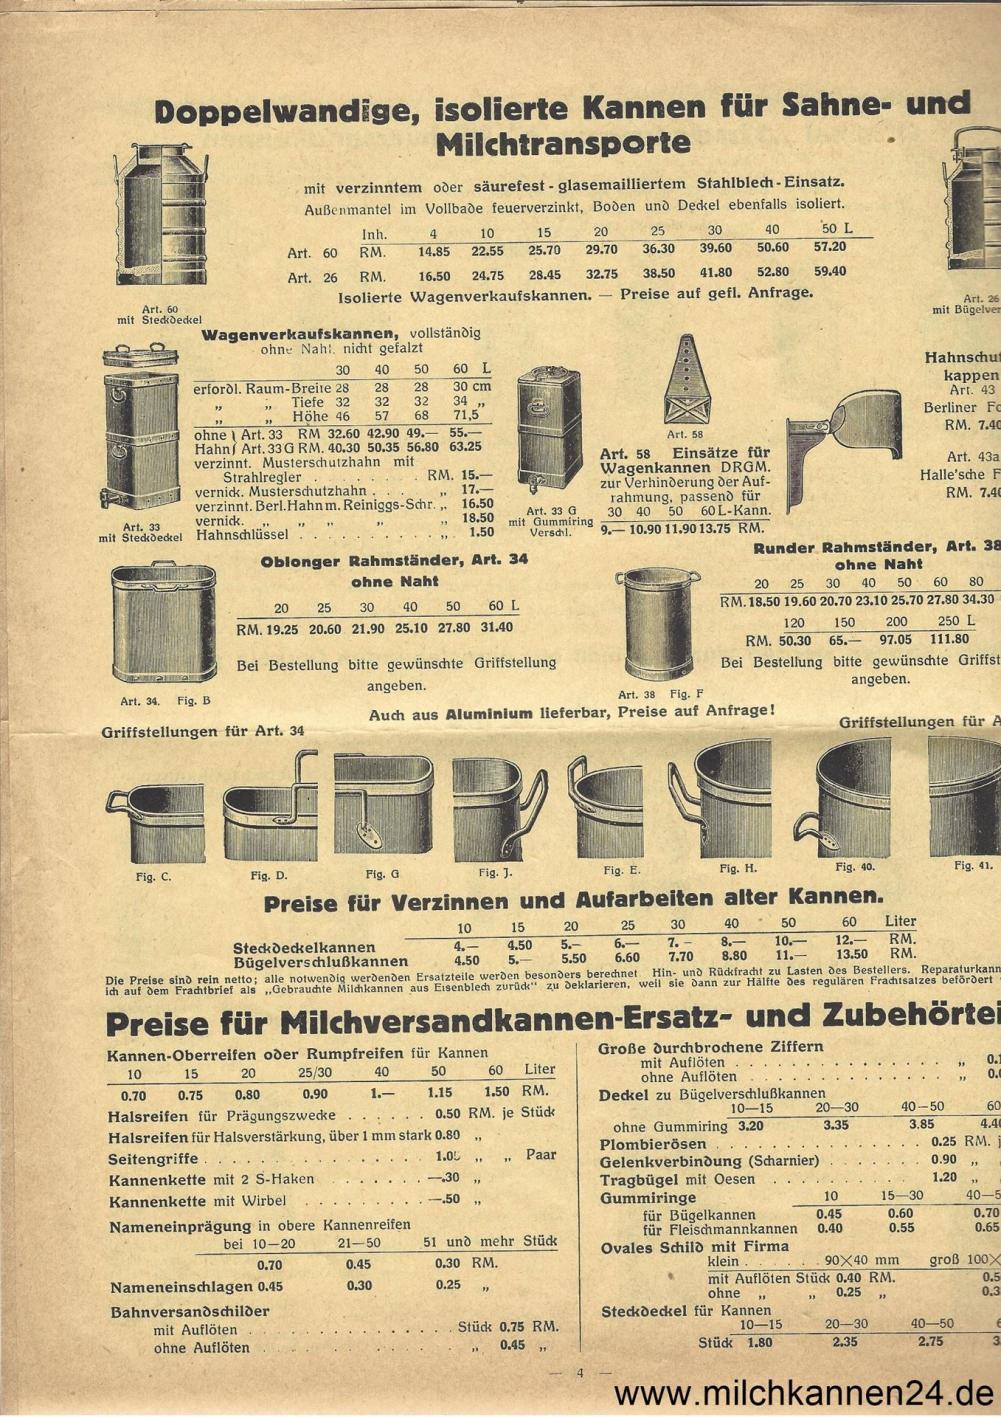 Georg Sindermann Preisliste von 1930, Seite 4. Schwerpunkte: Sahntransportkannen, Milchtransportkannen, Ersatzteile, Zubehörteile